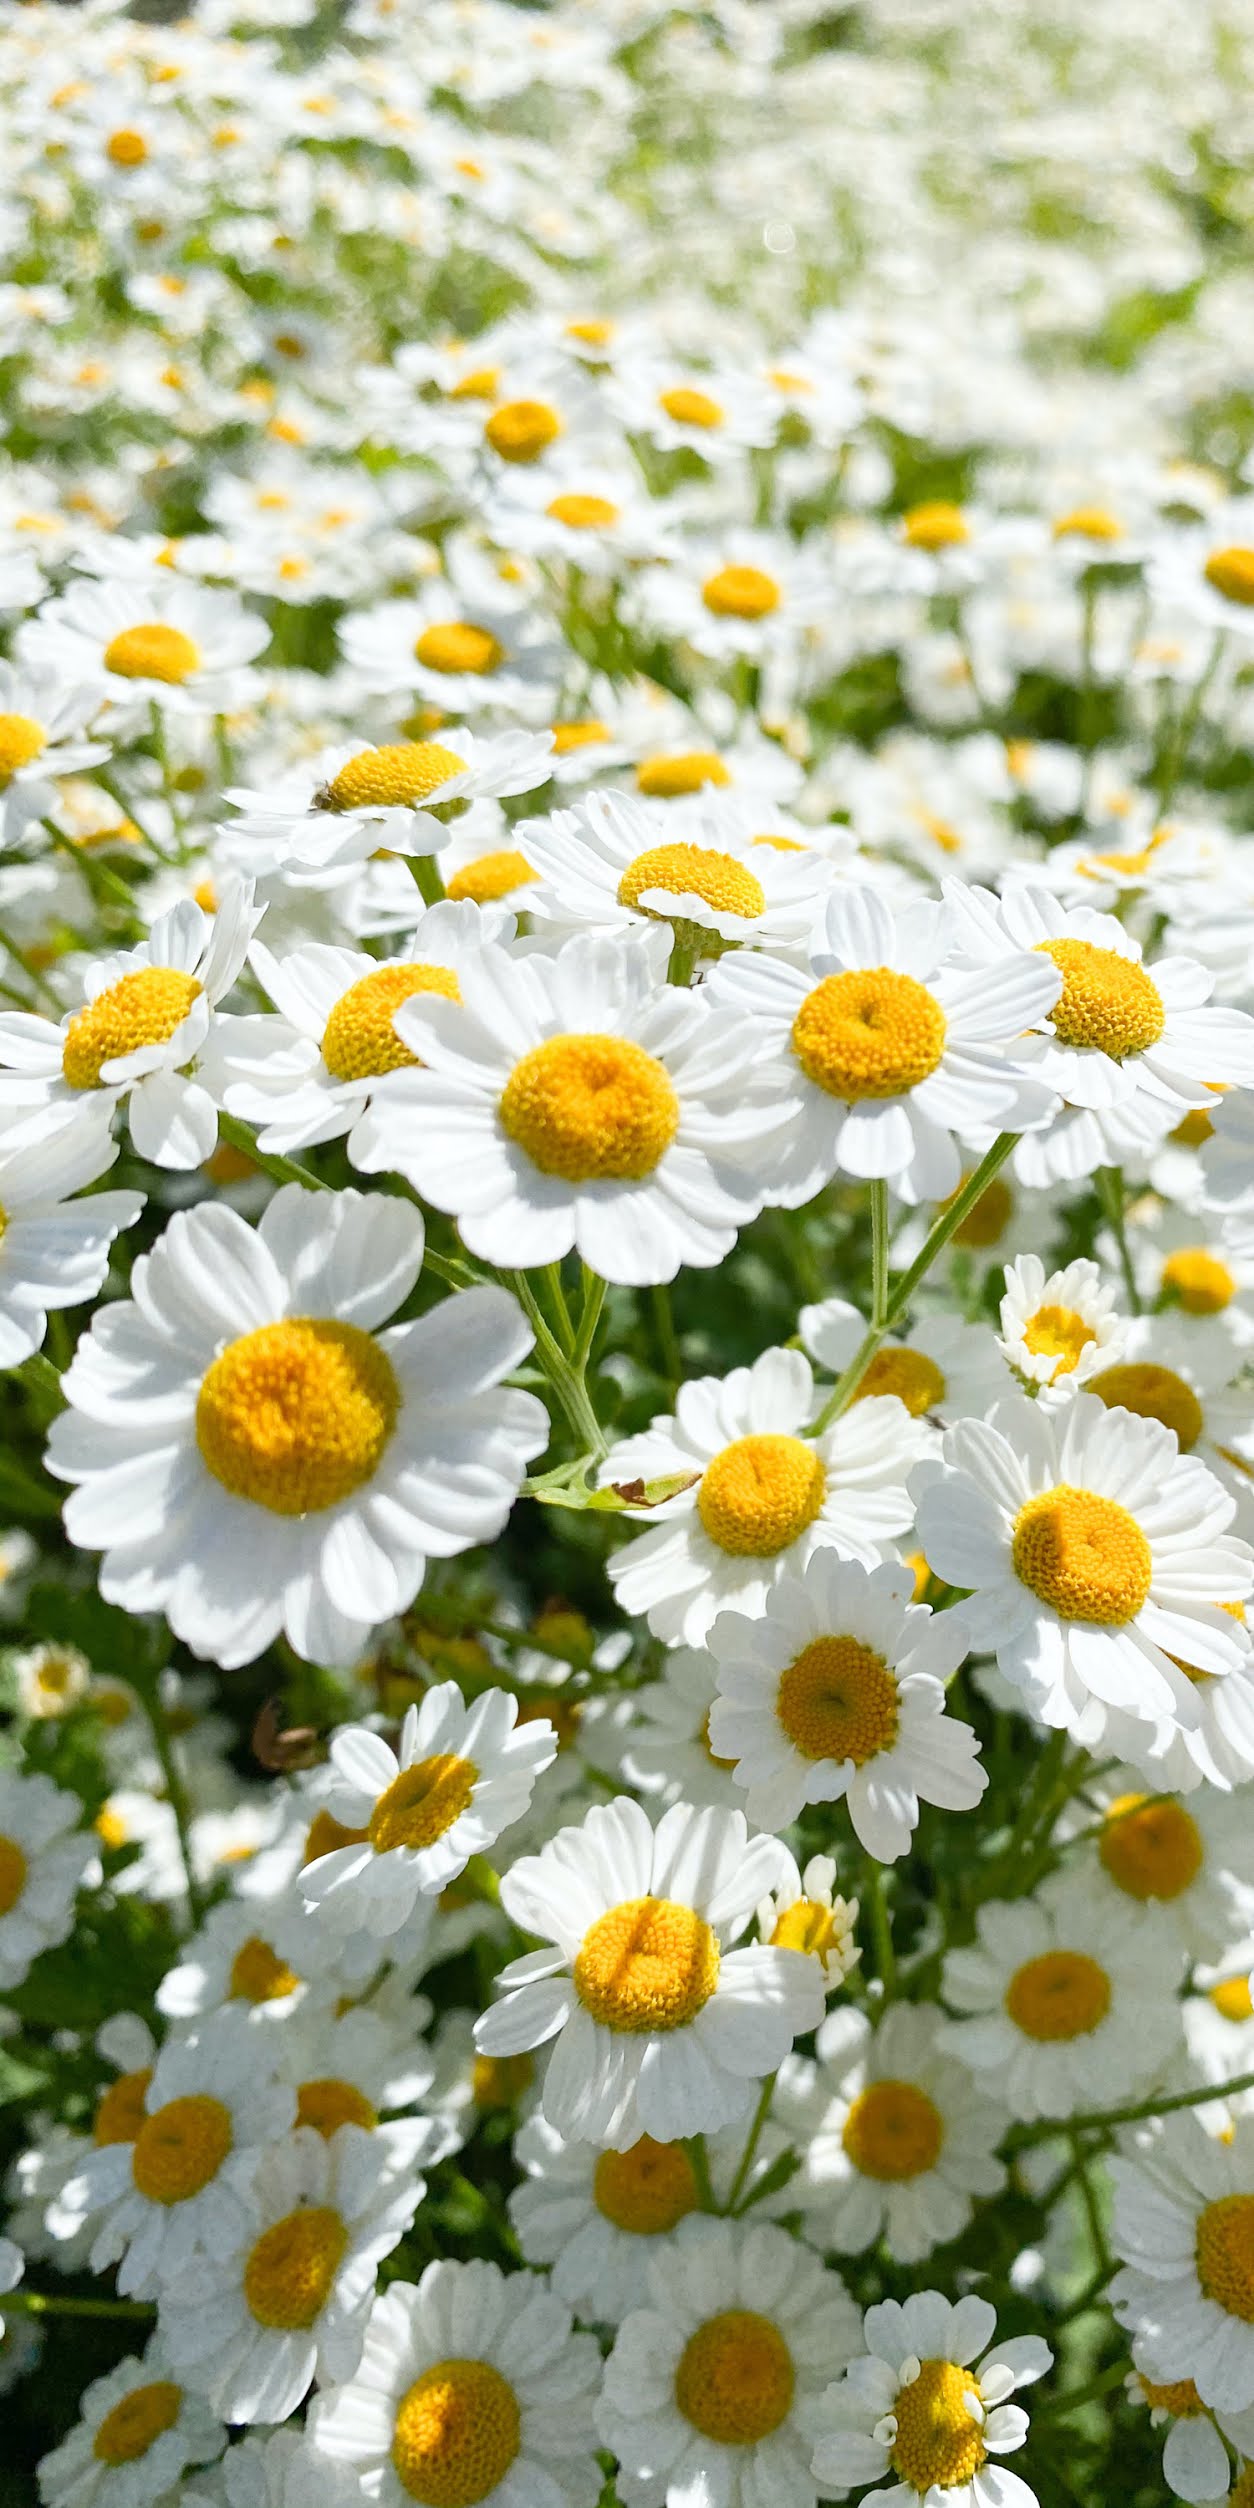 50 Những hình ảnh hoa cúc đẹp chất lượng cao